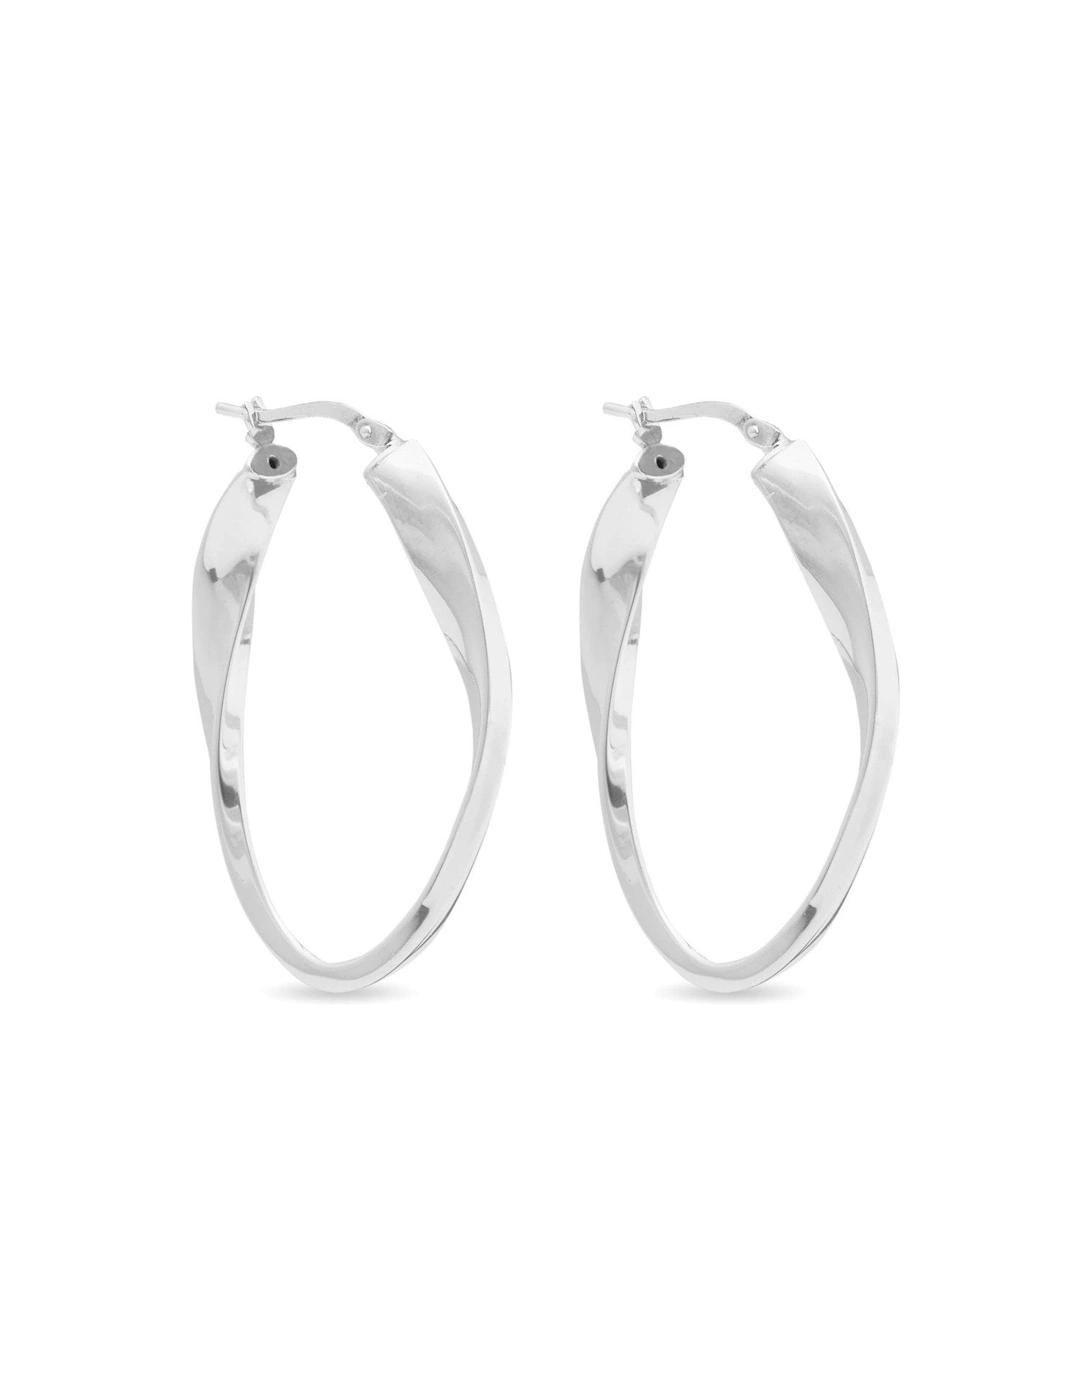 Sterling Silver 925 Oval Hoop Earrings, 2 of 1